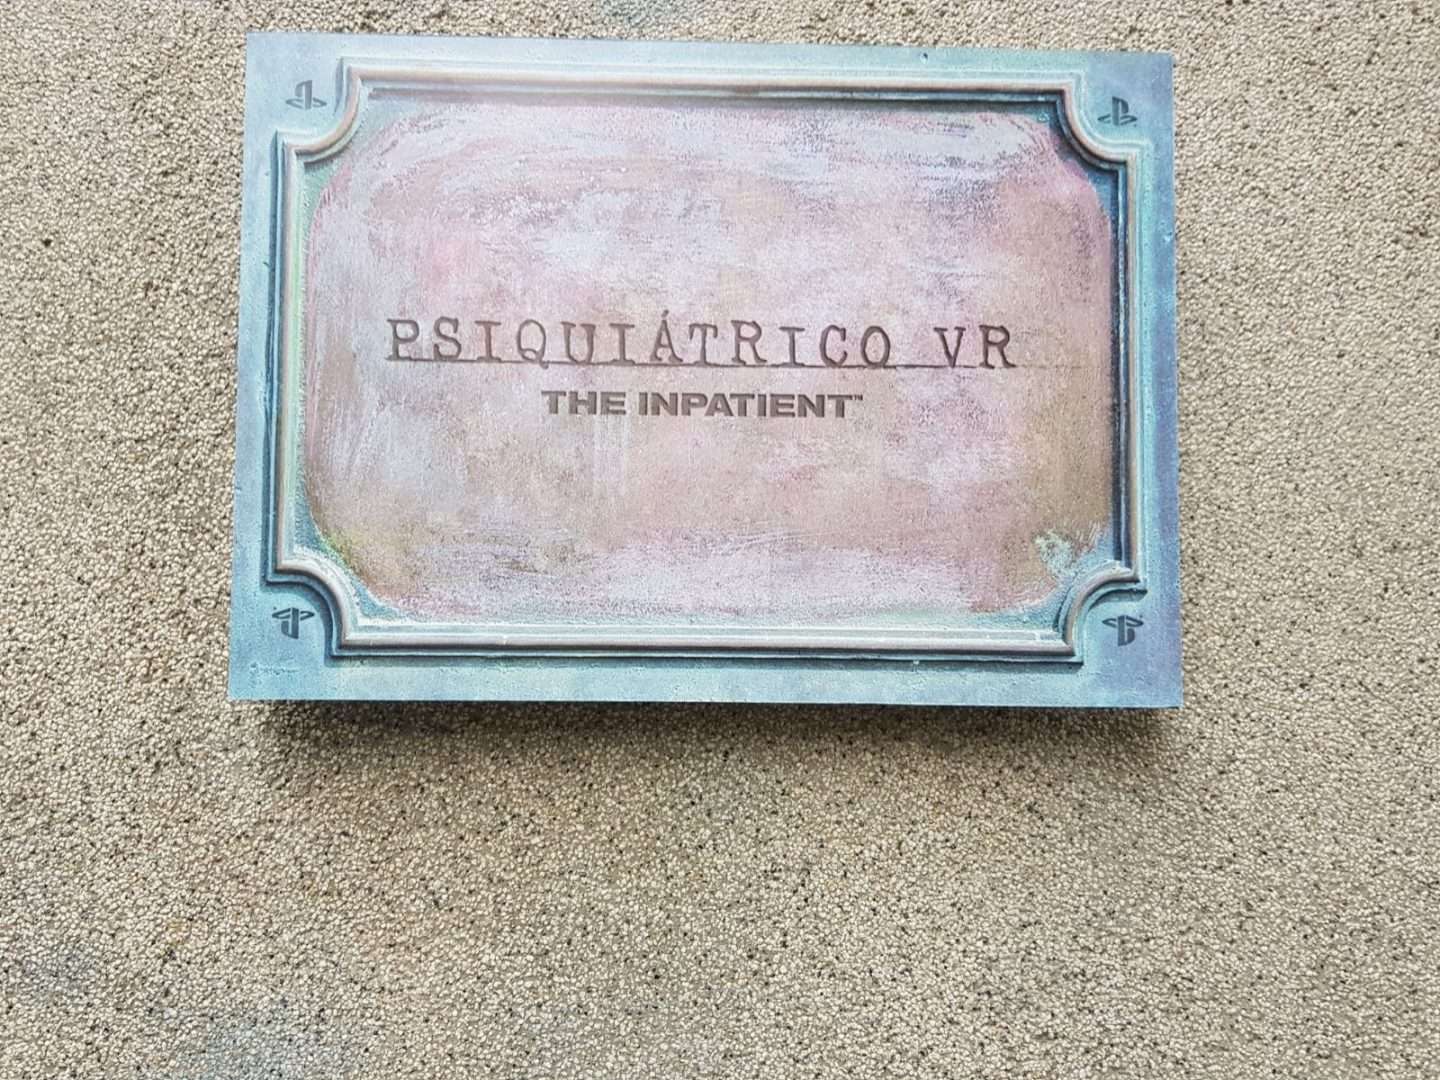 Asistimos al evento del Psiquiátrico VR en Madrid